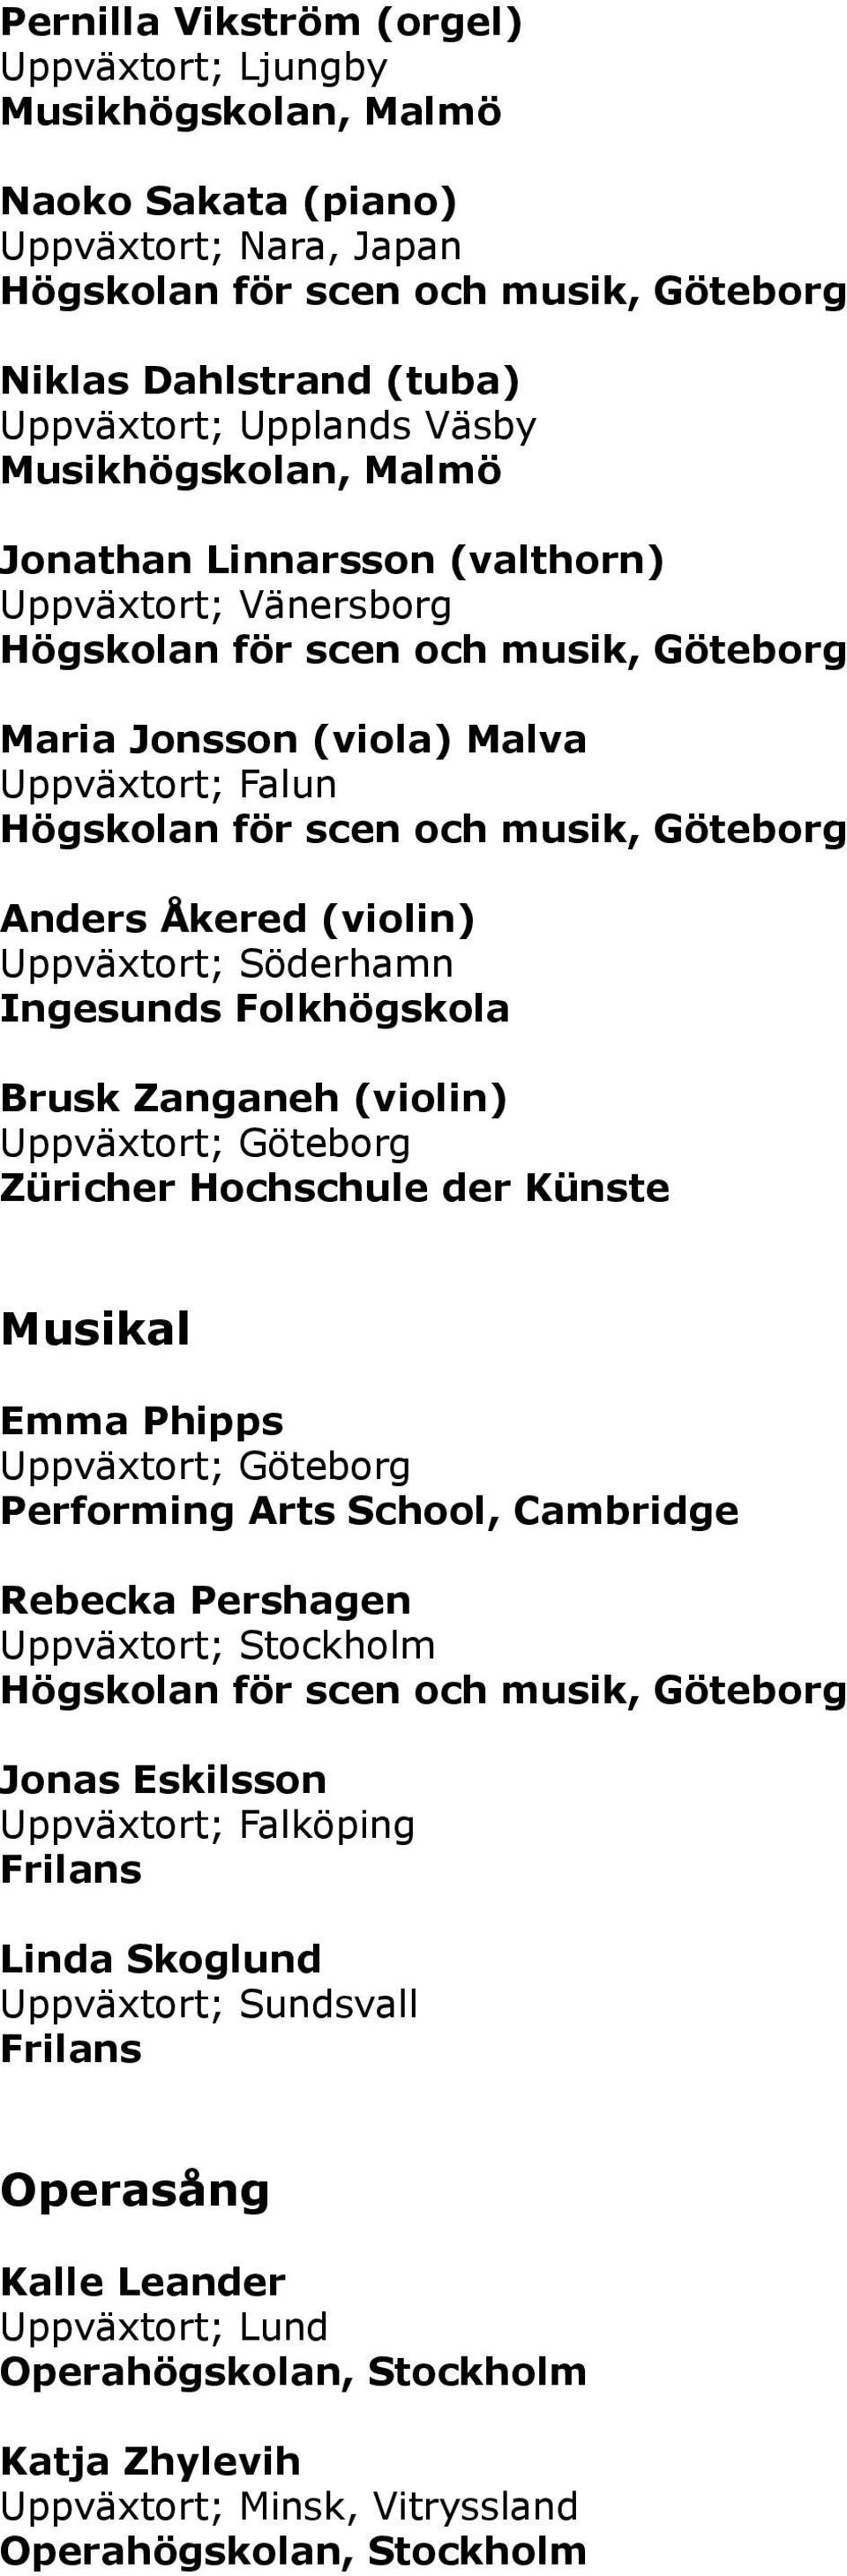 (violin) Züricher Hochschule der Künste Musikal Emma Phipps Performing Arts School, Cambridge Rebecka Pershagen Jonas Eskilsson Uppväxtort; Falköping Linda